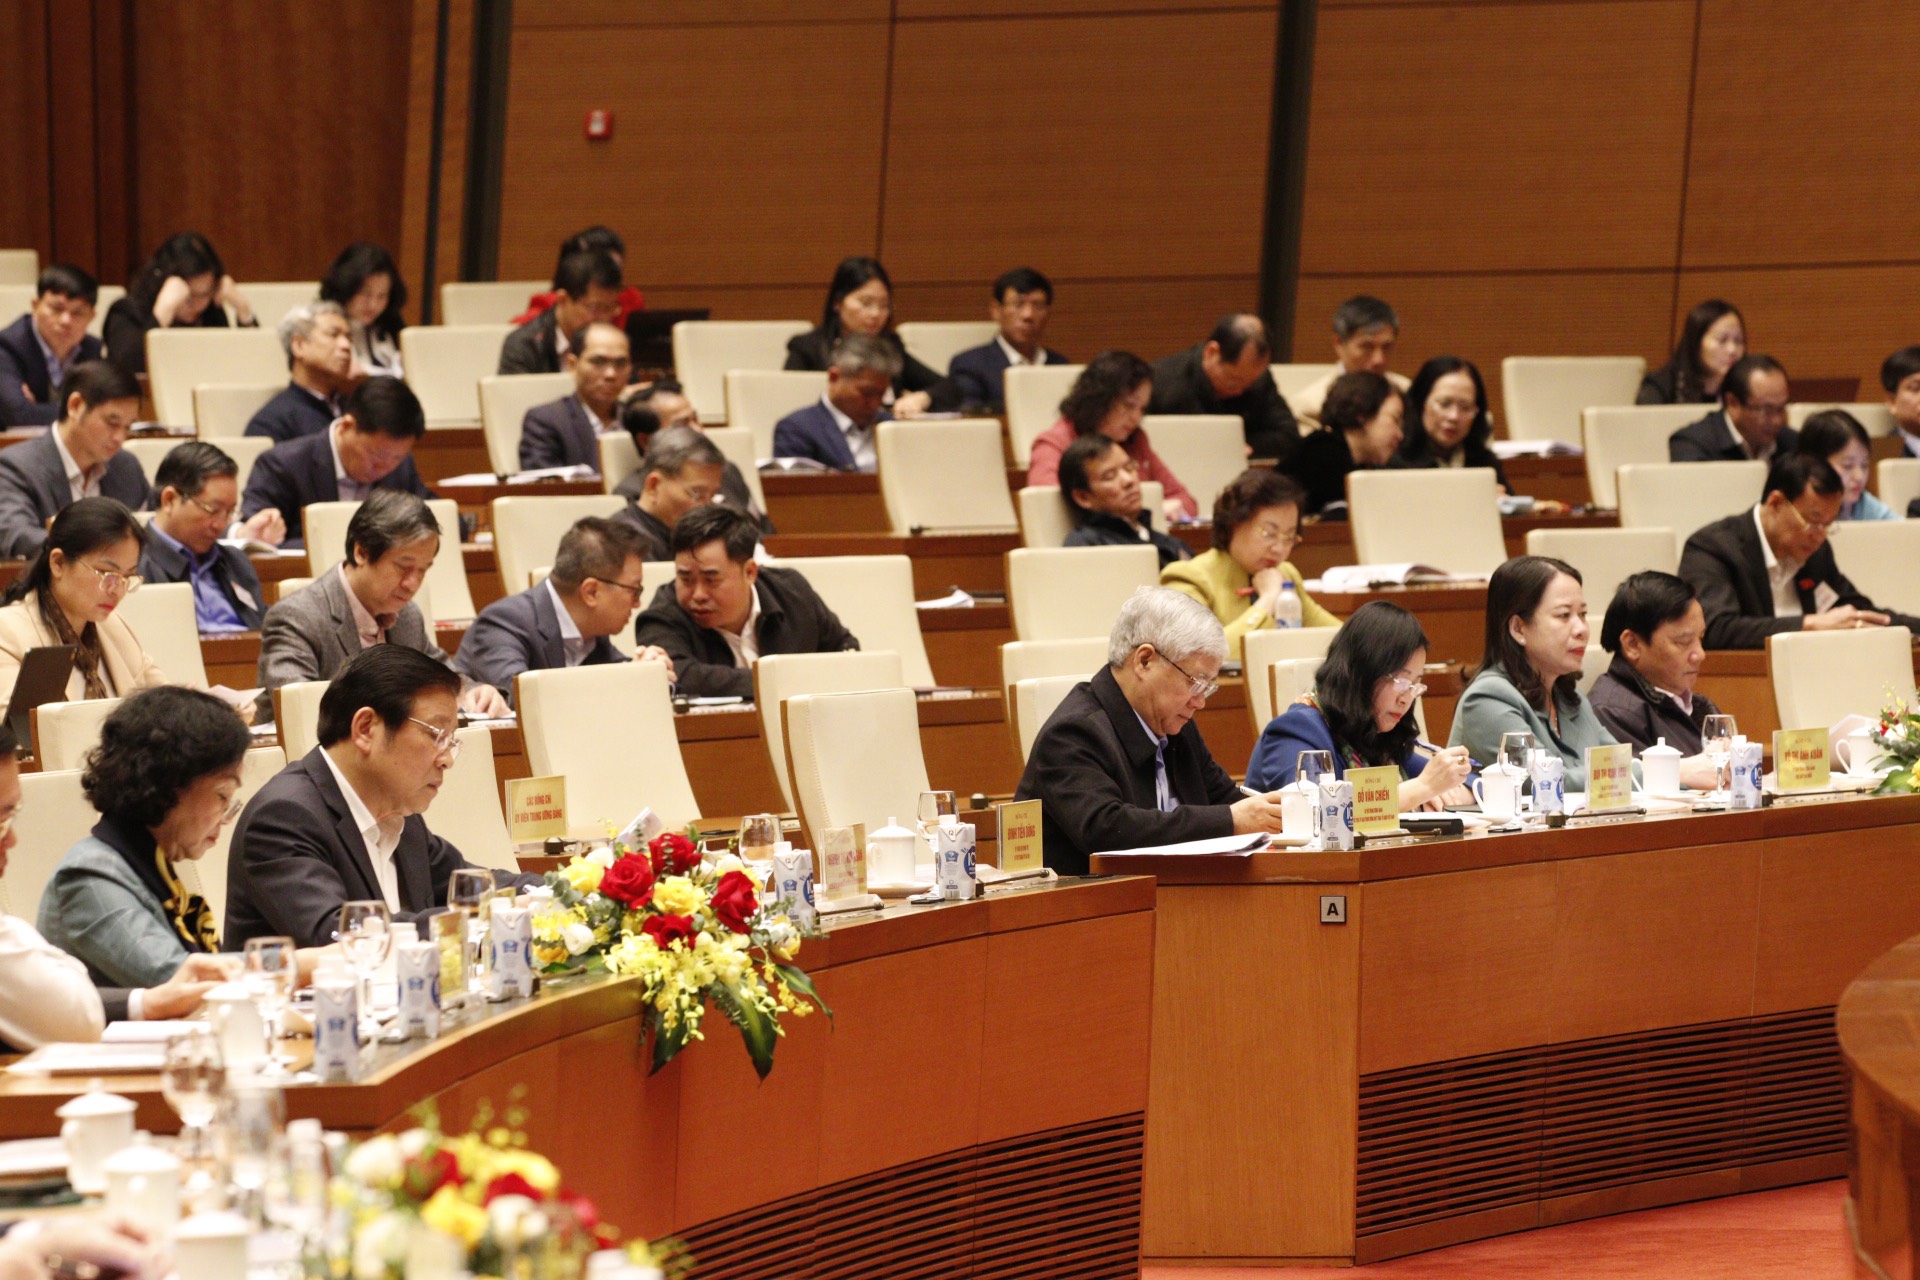 Các đại biểu nghe truyền đạt Nghị quyết 29-NQ/TW về “Tiếp tục đẩy mạnh công nghiệp hoá, hiện đại hoá đất nước đến năm 2030, tầm nhìn đến năm 2045”. Ảnh: Nhật Bắc